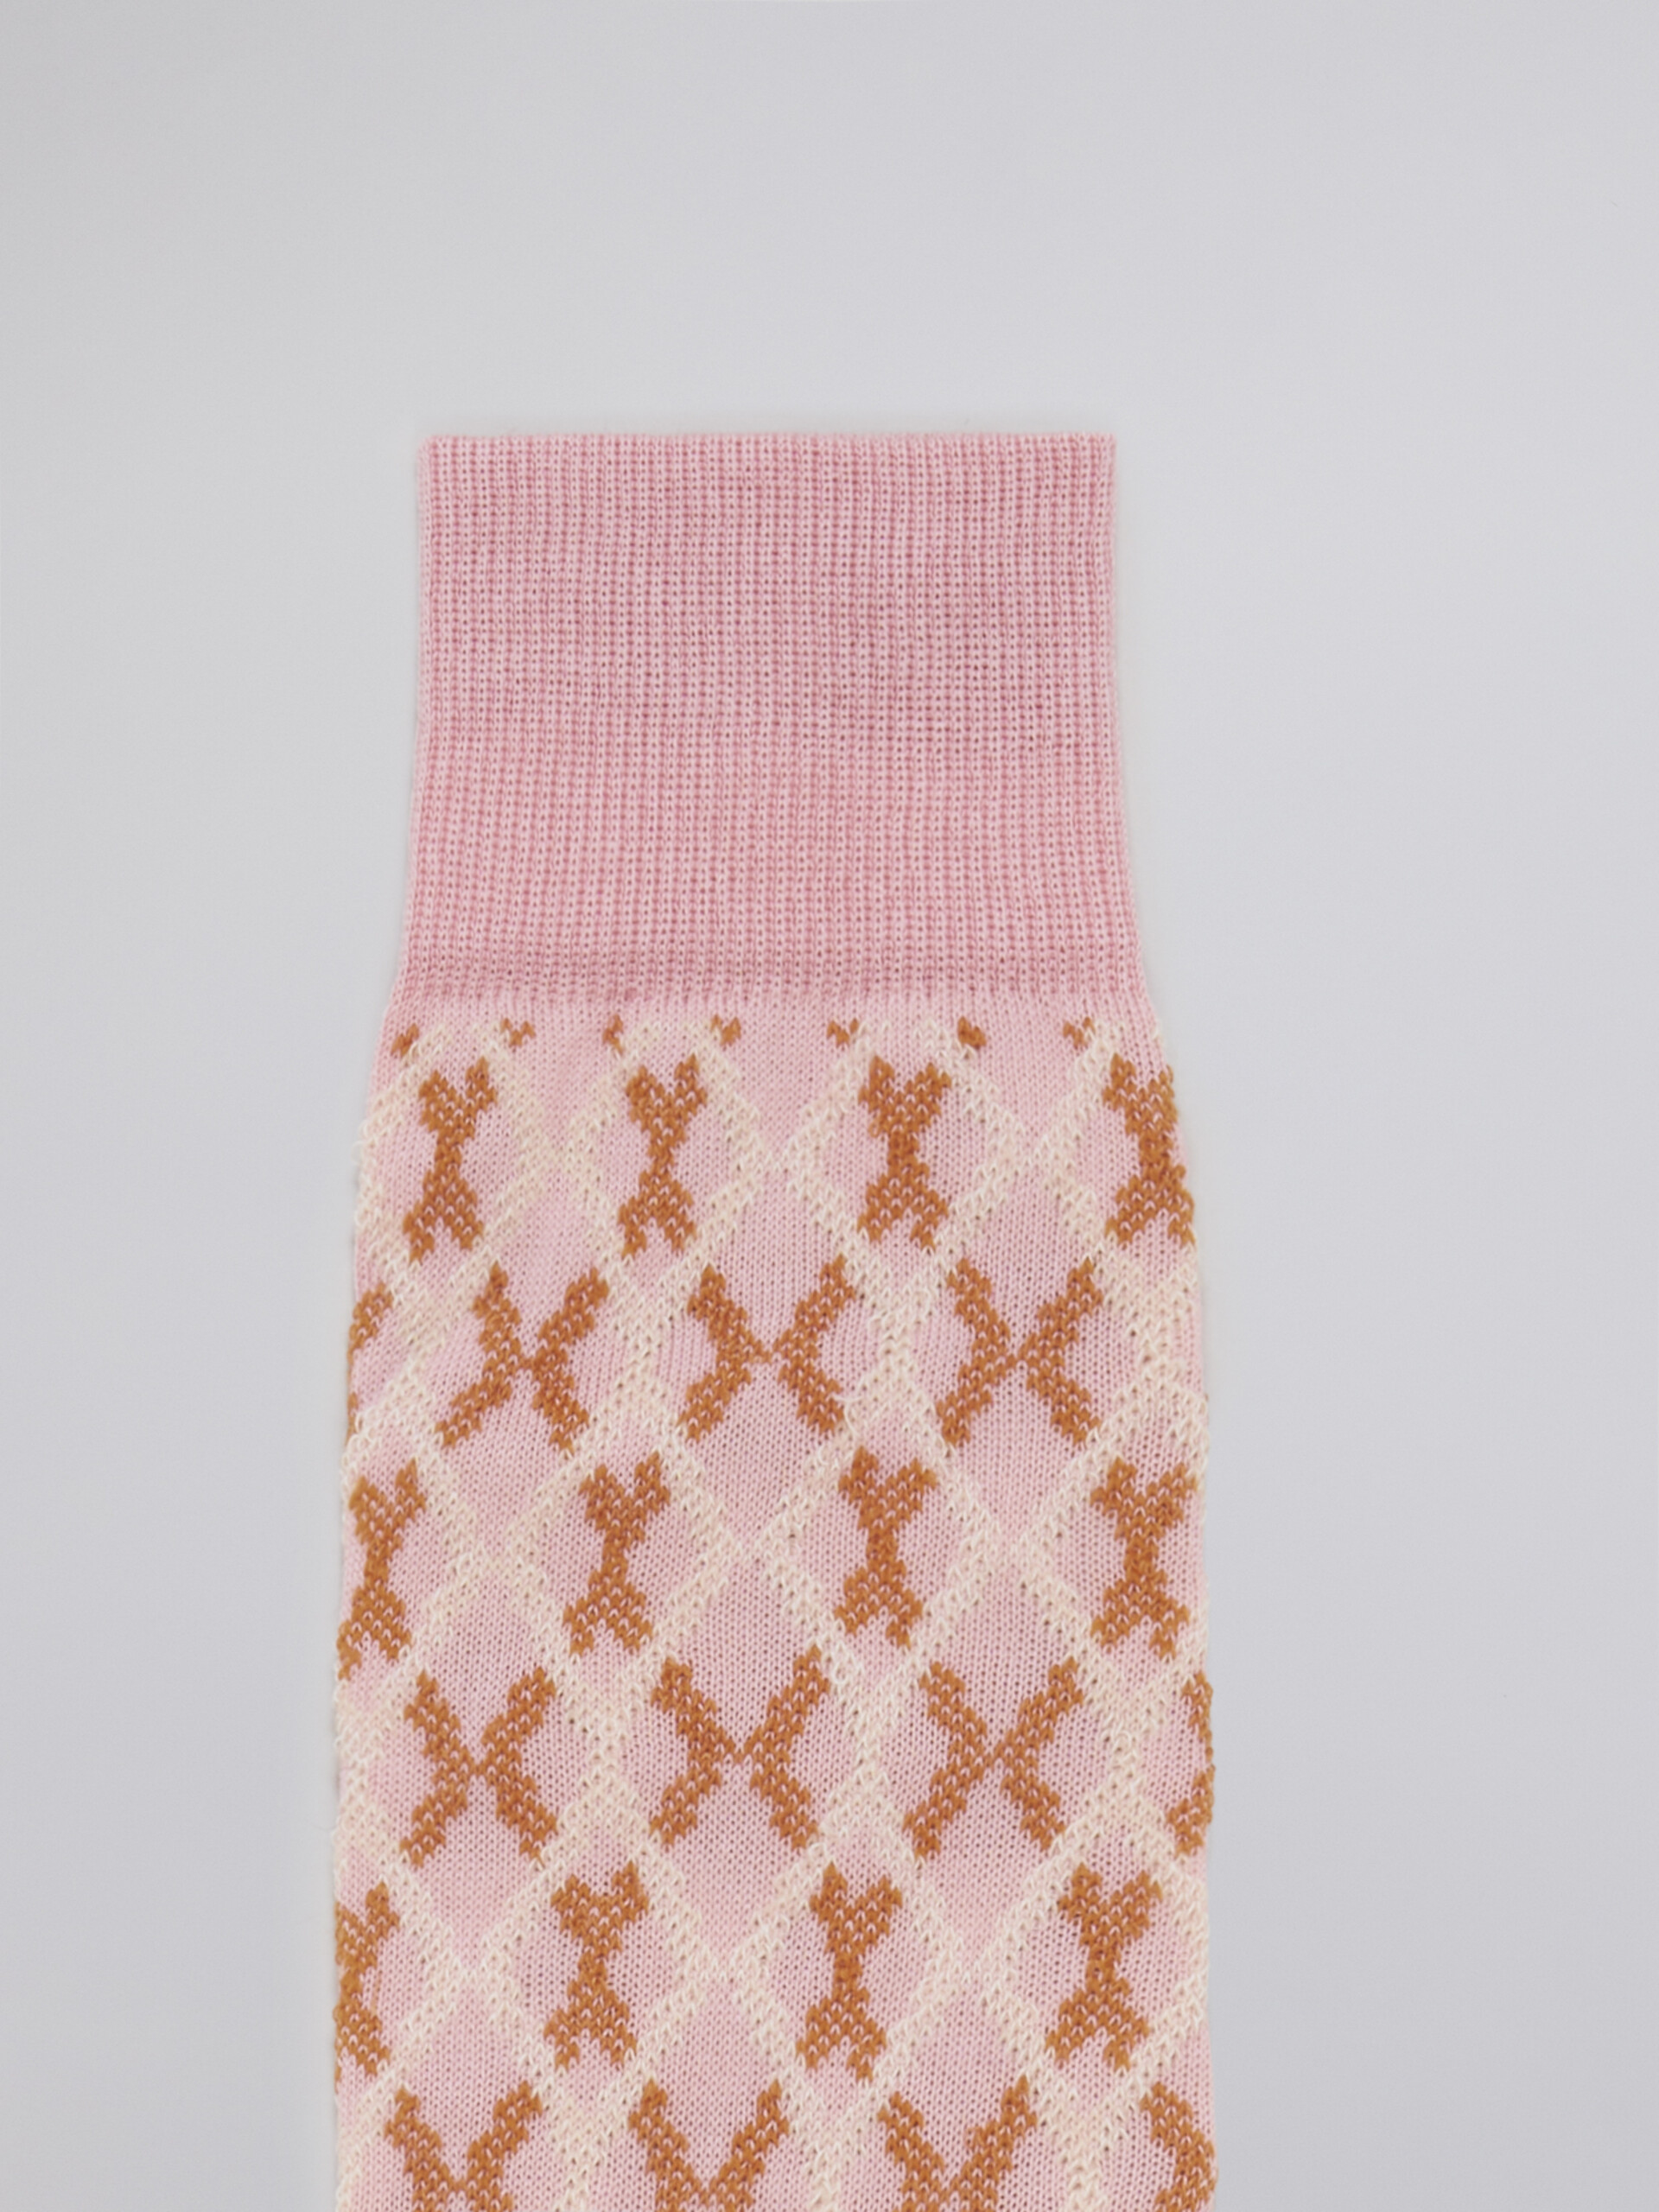 Pink micro check jacquard cotton and nylon sock - Socks - Image 3